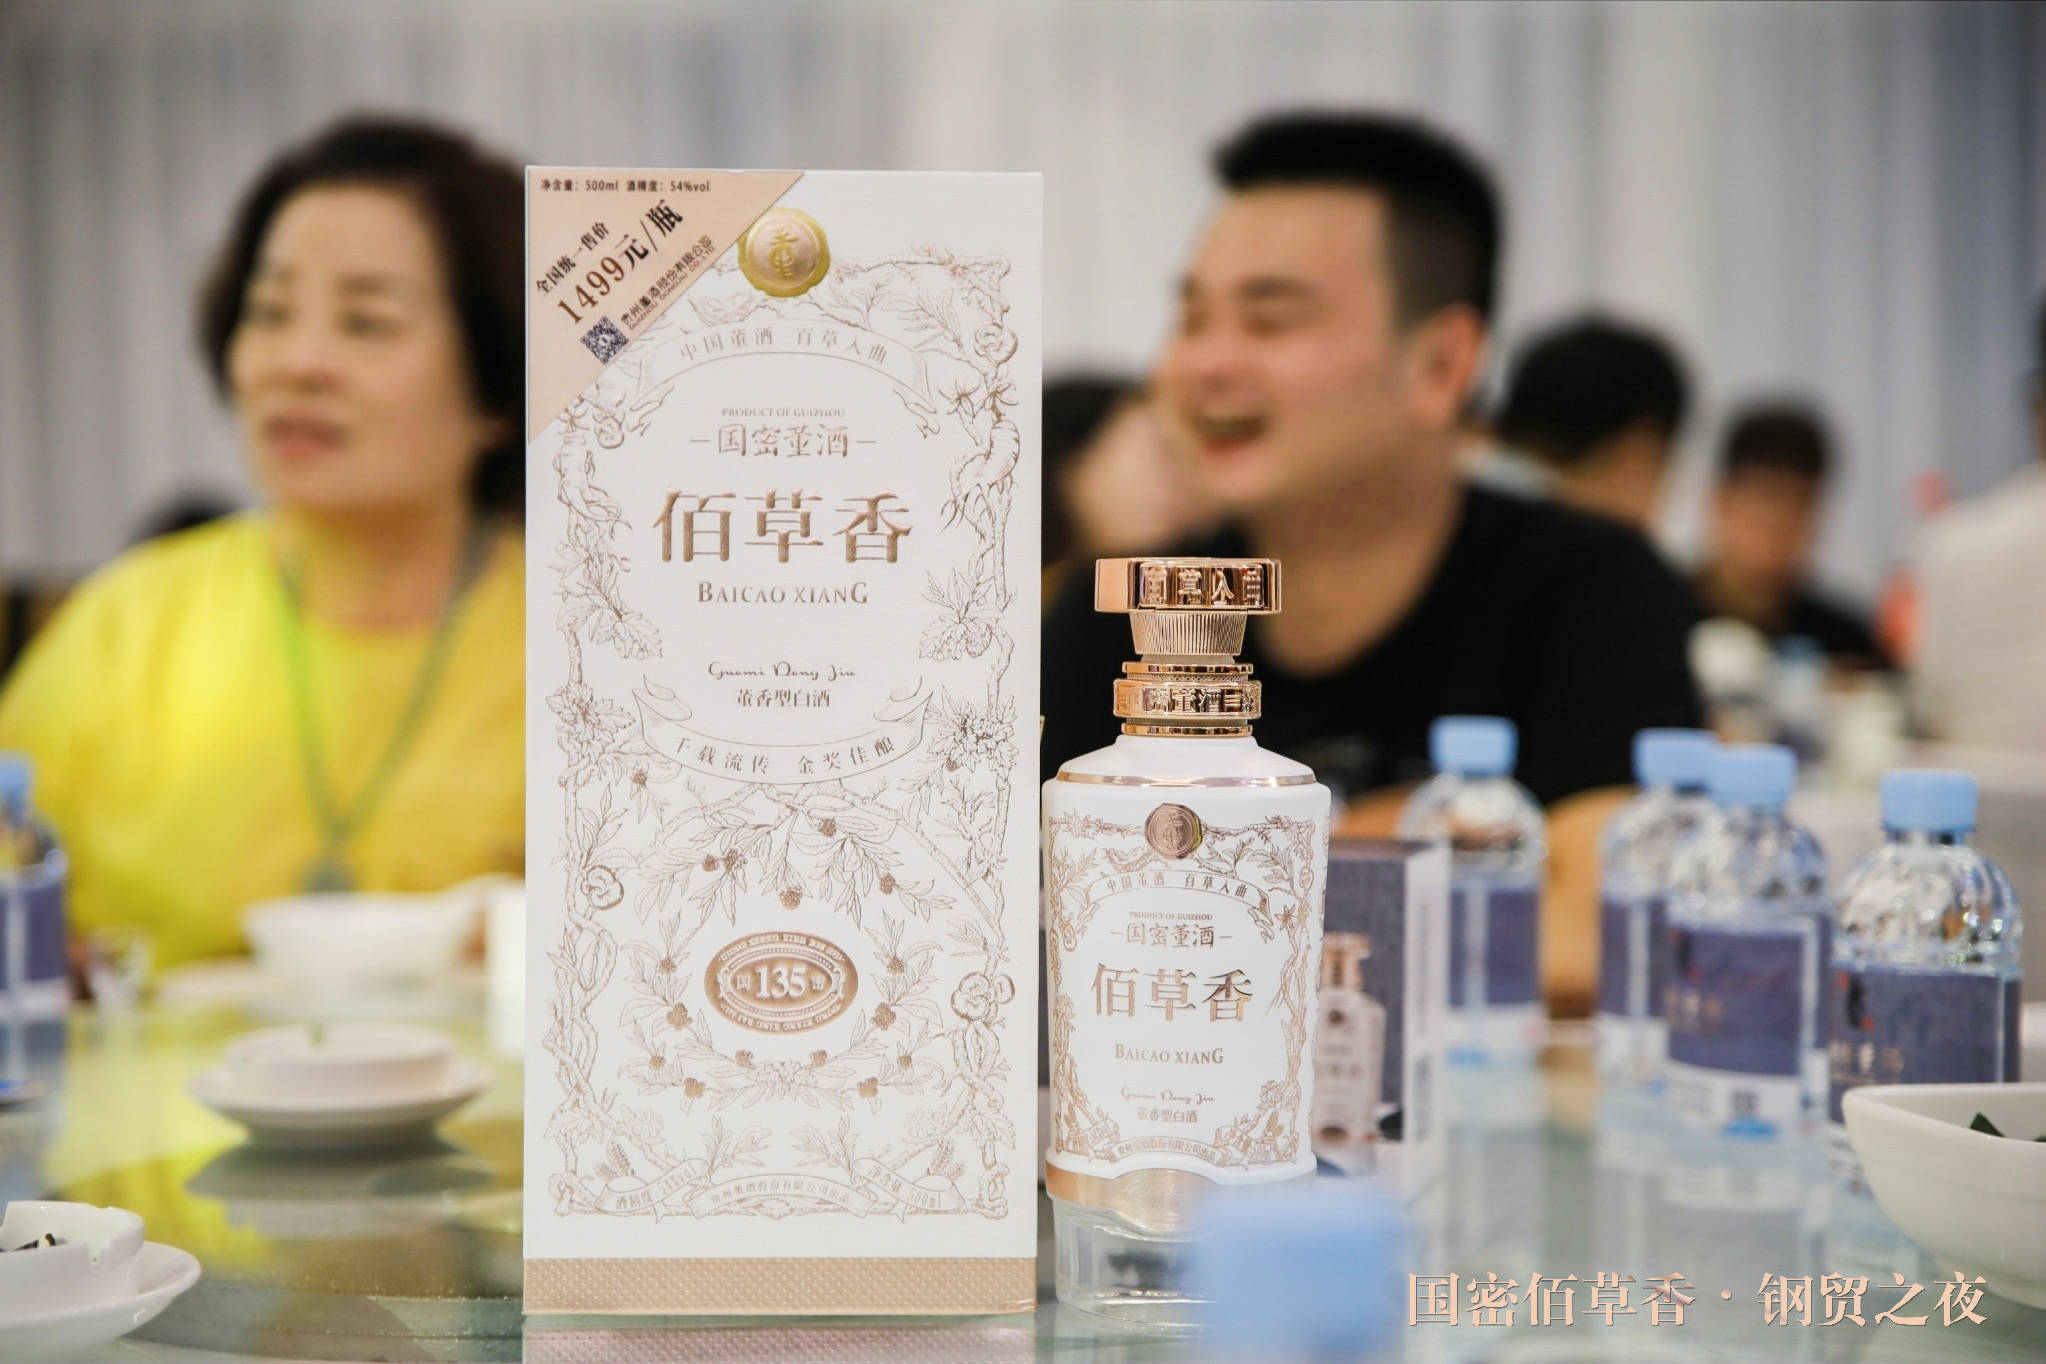 中国董酒"国密佰草香钢贸之夜"活动在南宁成功举行